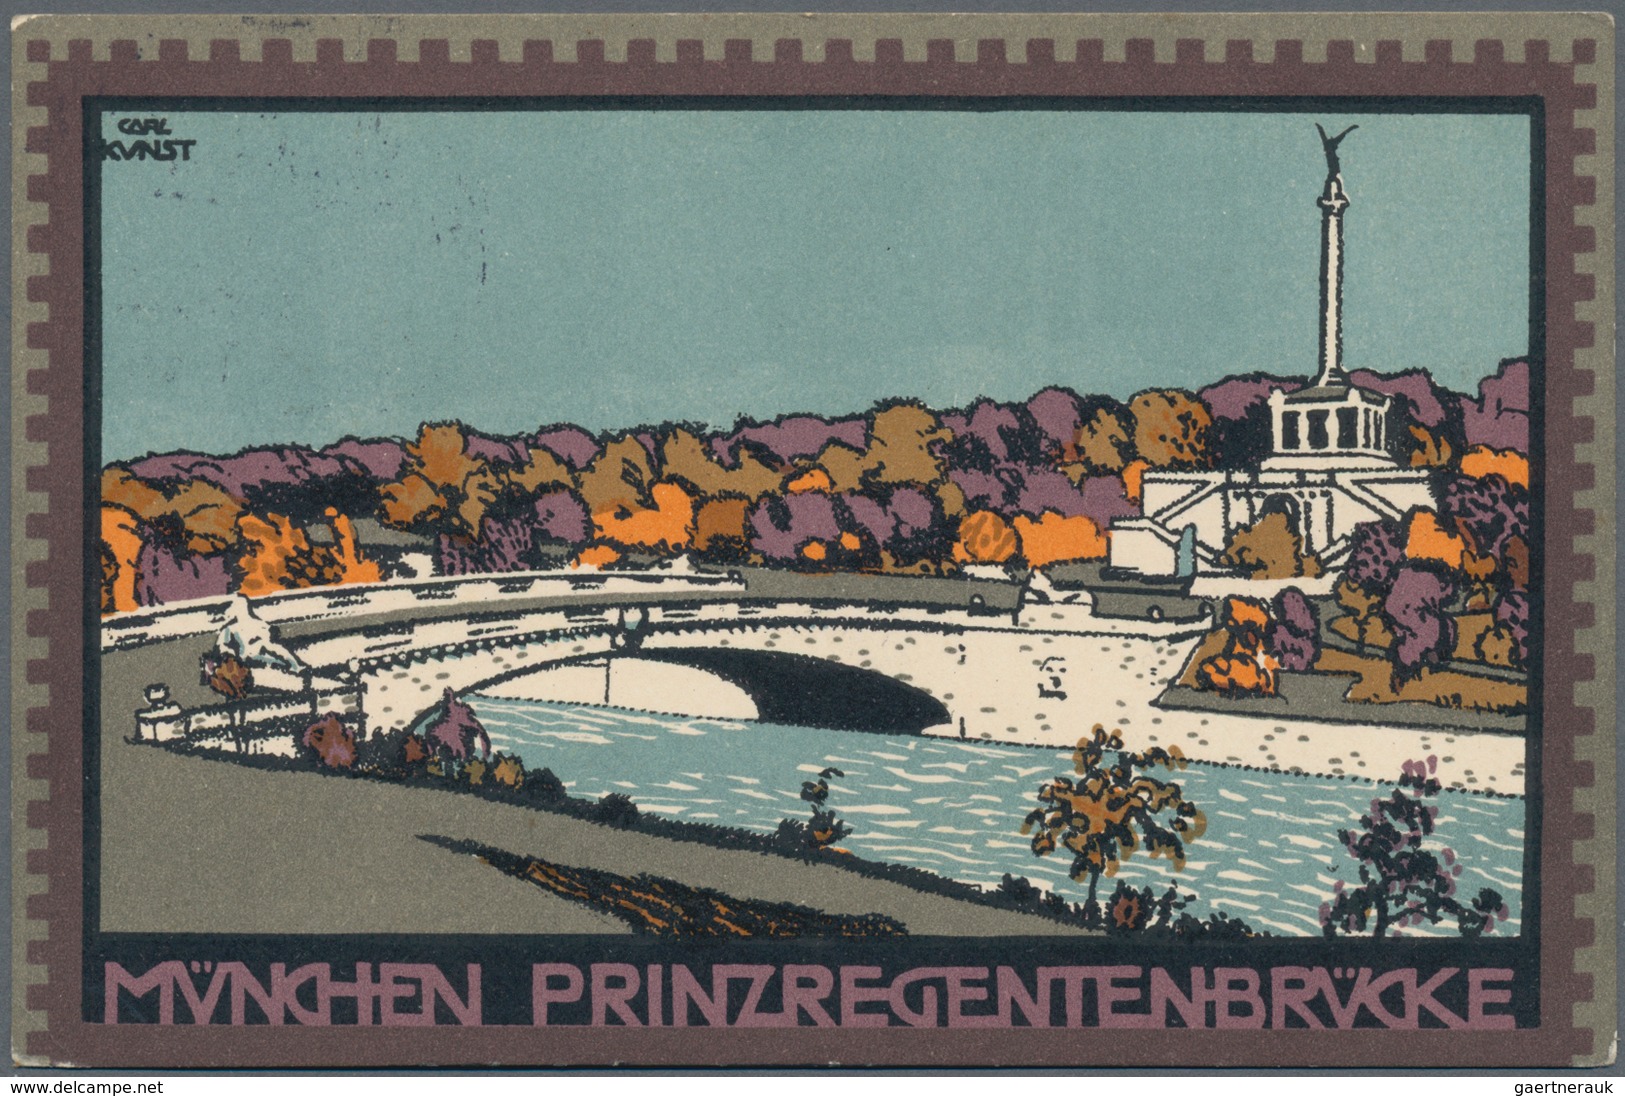 Ansichtskarten: Bayern: MÜNCHEN BOGENHAUSEN, Schachtel mit weit über 350 historischen Ansichtskarten